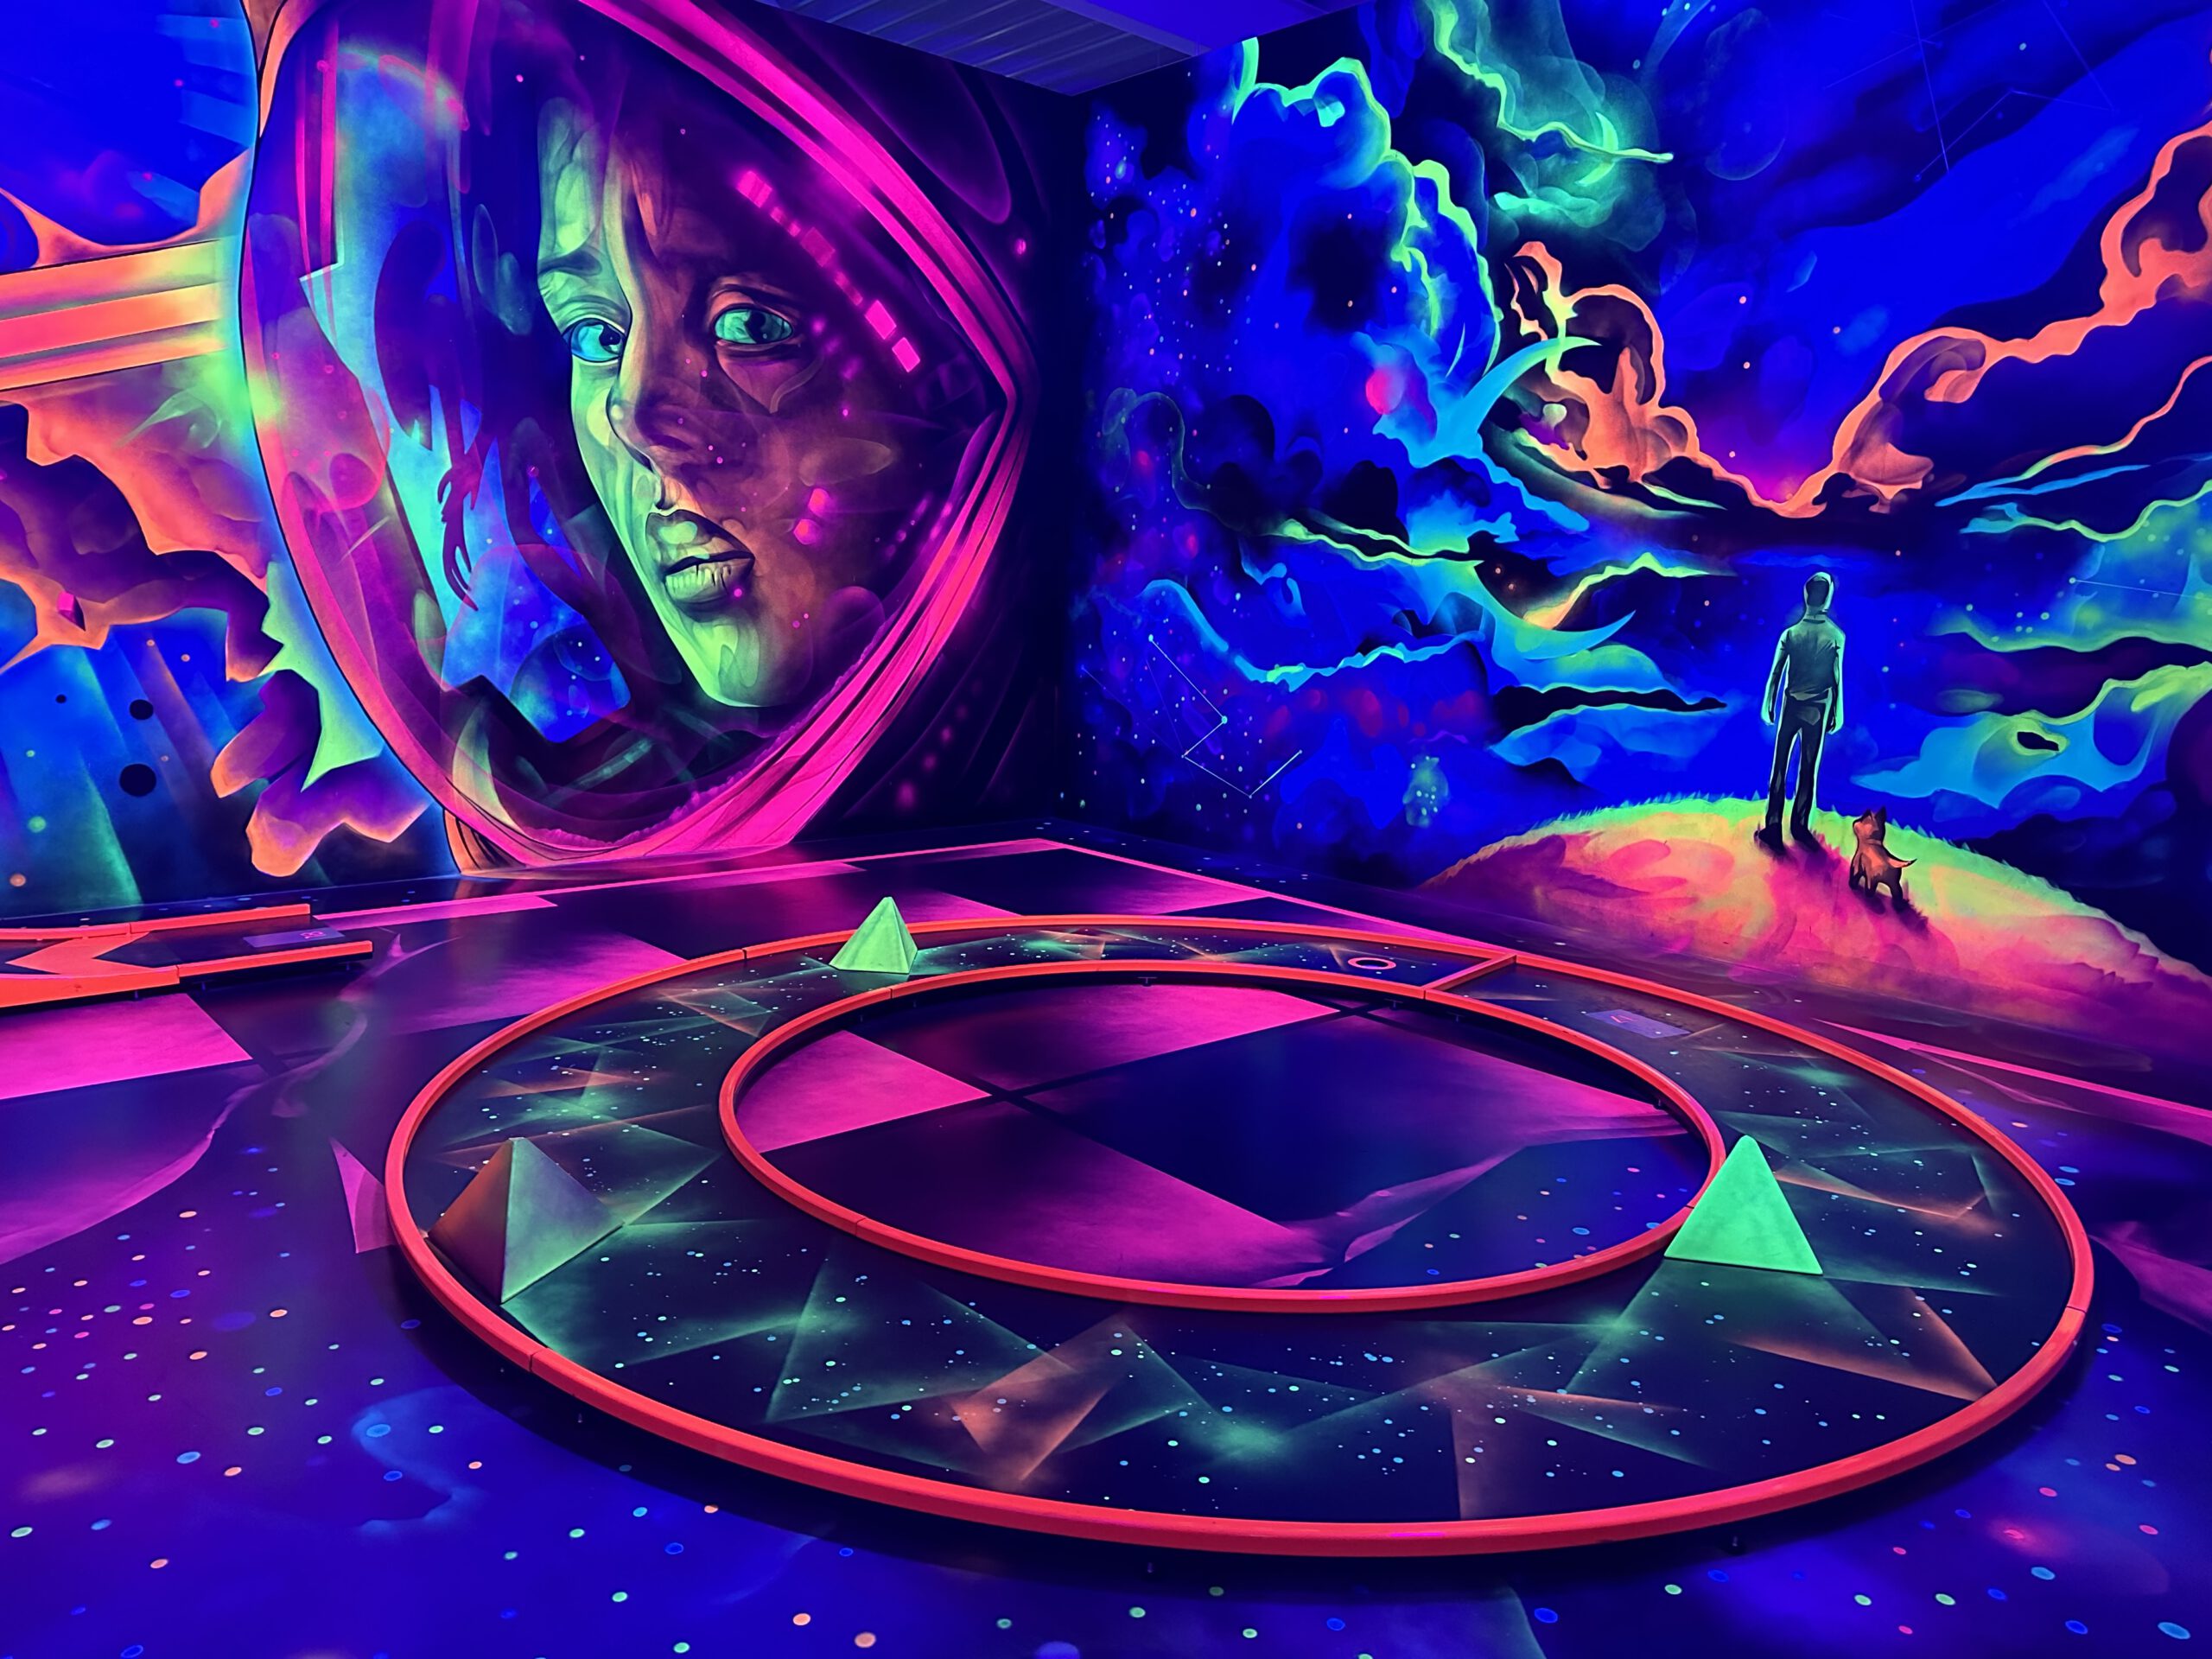 Graffiti Kunst in blau/lila zeigt eine Astronautin zum Thema Arcage und Gaming.